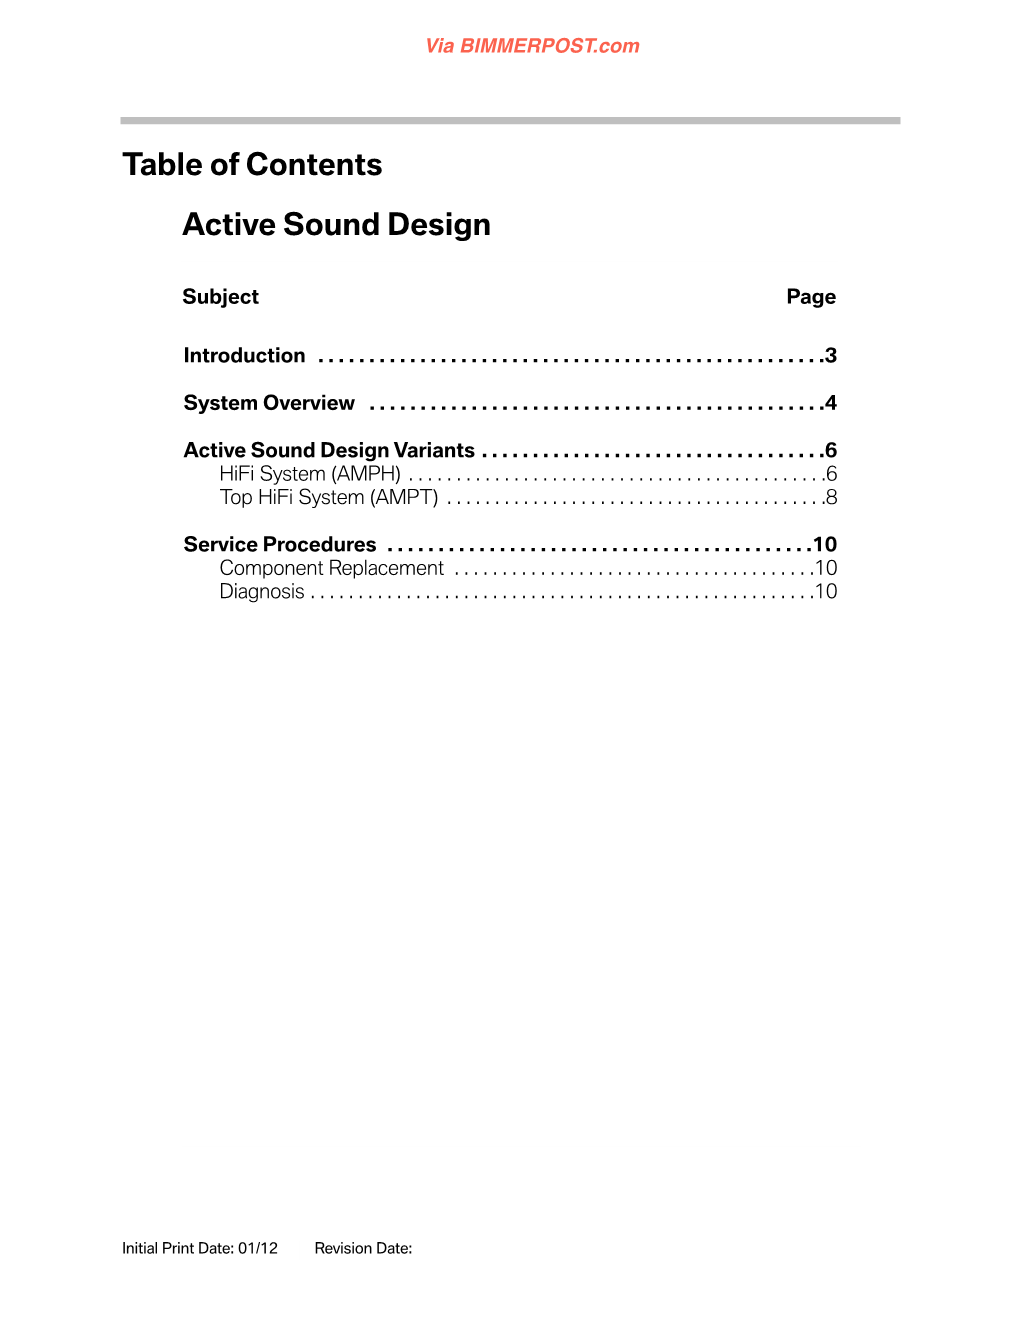 Active Sound Design 04 Active Sound Design